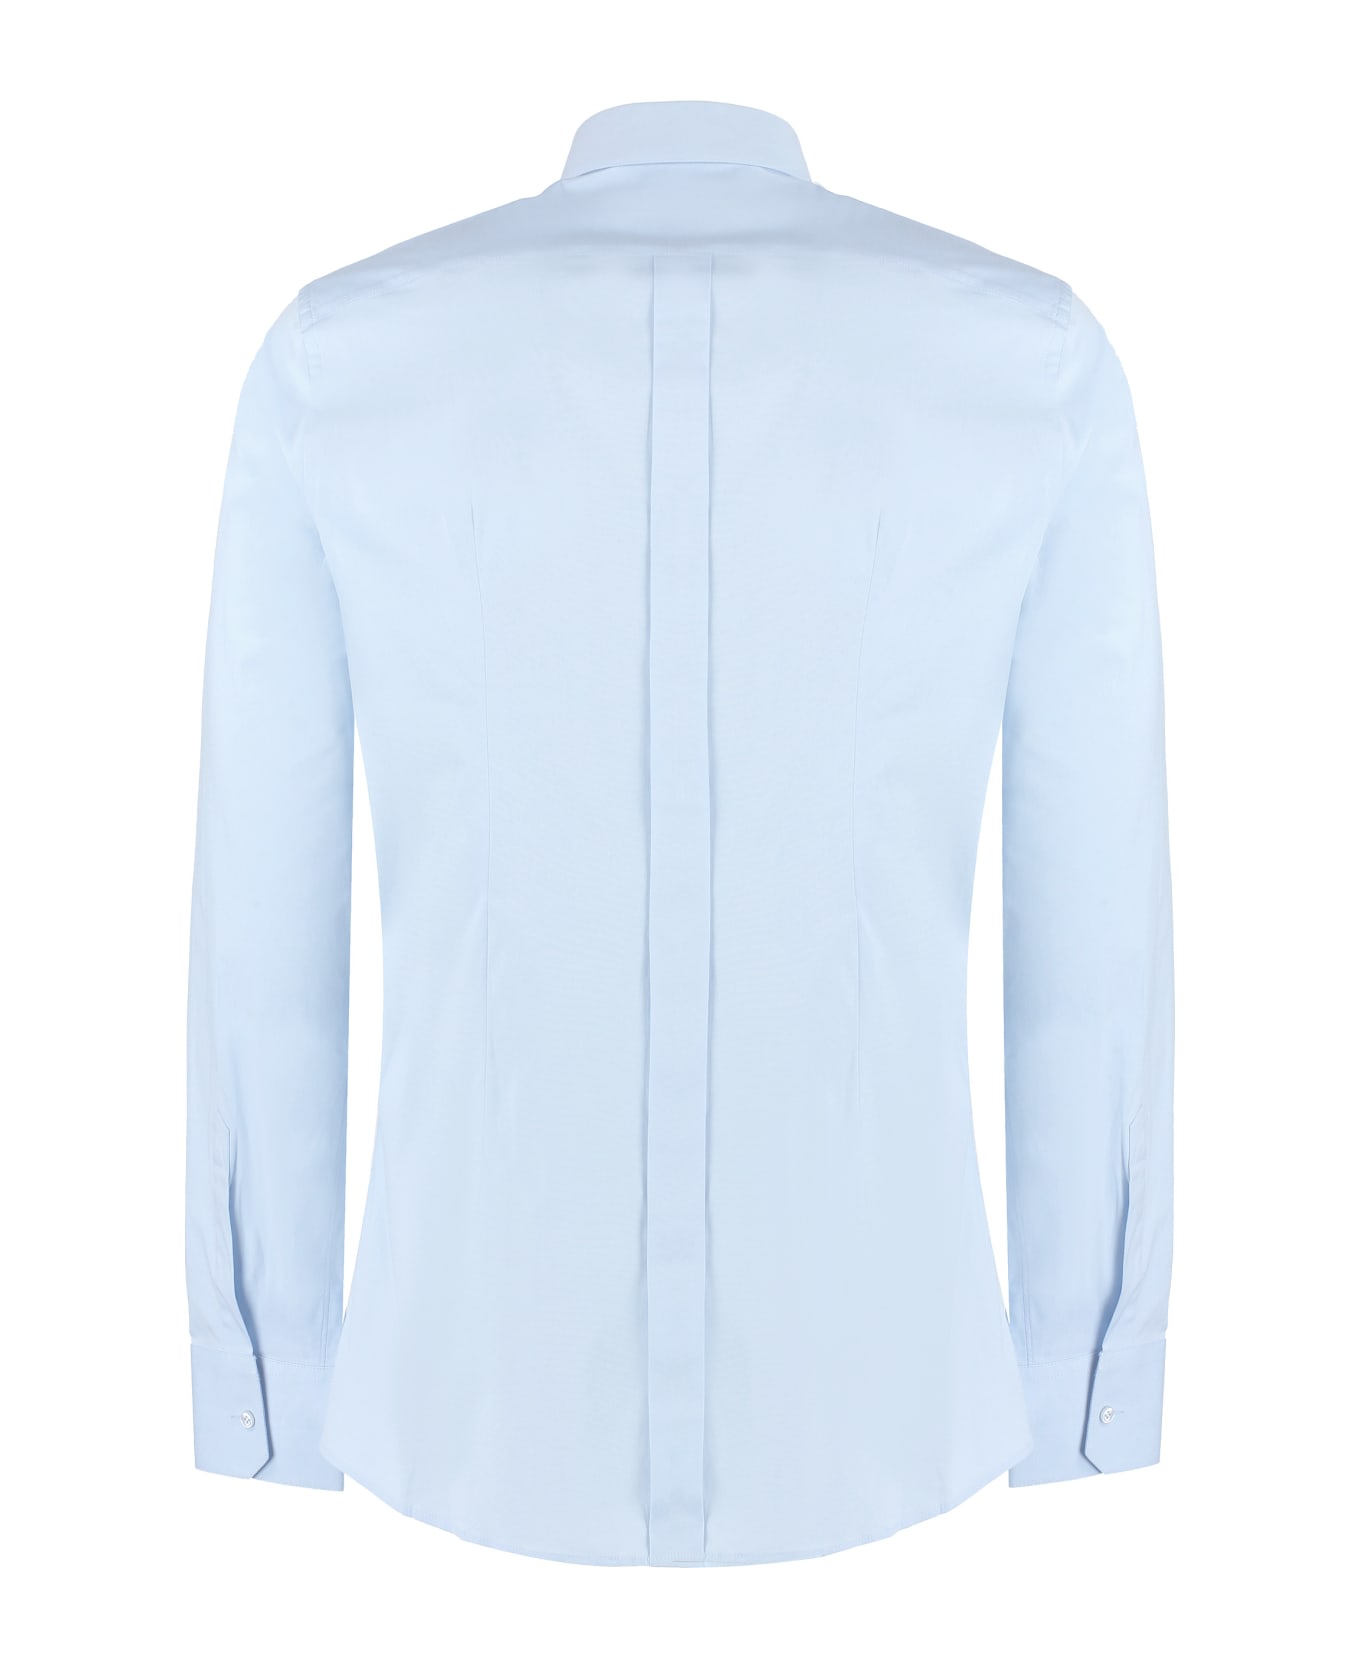 Dolce & Gabbana Cotton Shirt - Light Blue